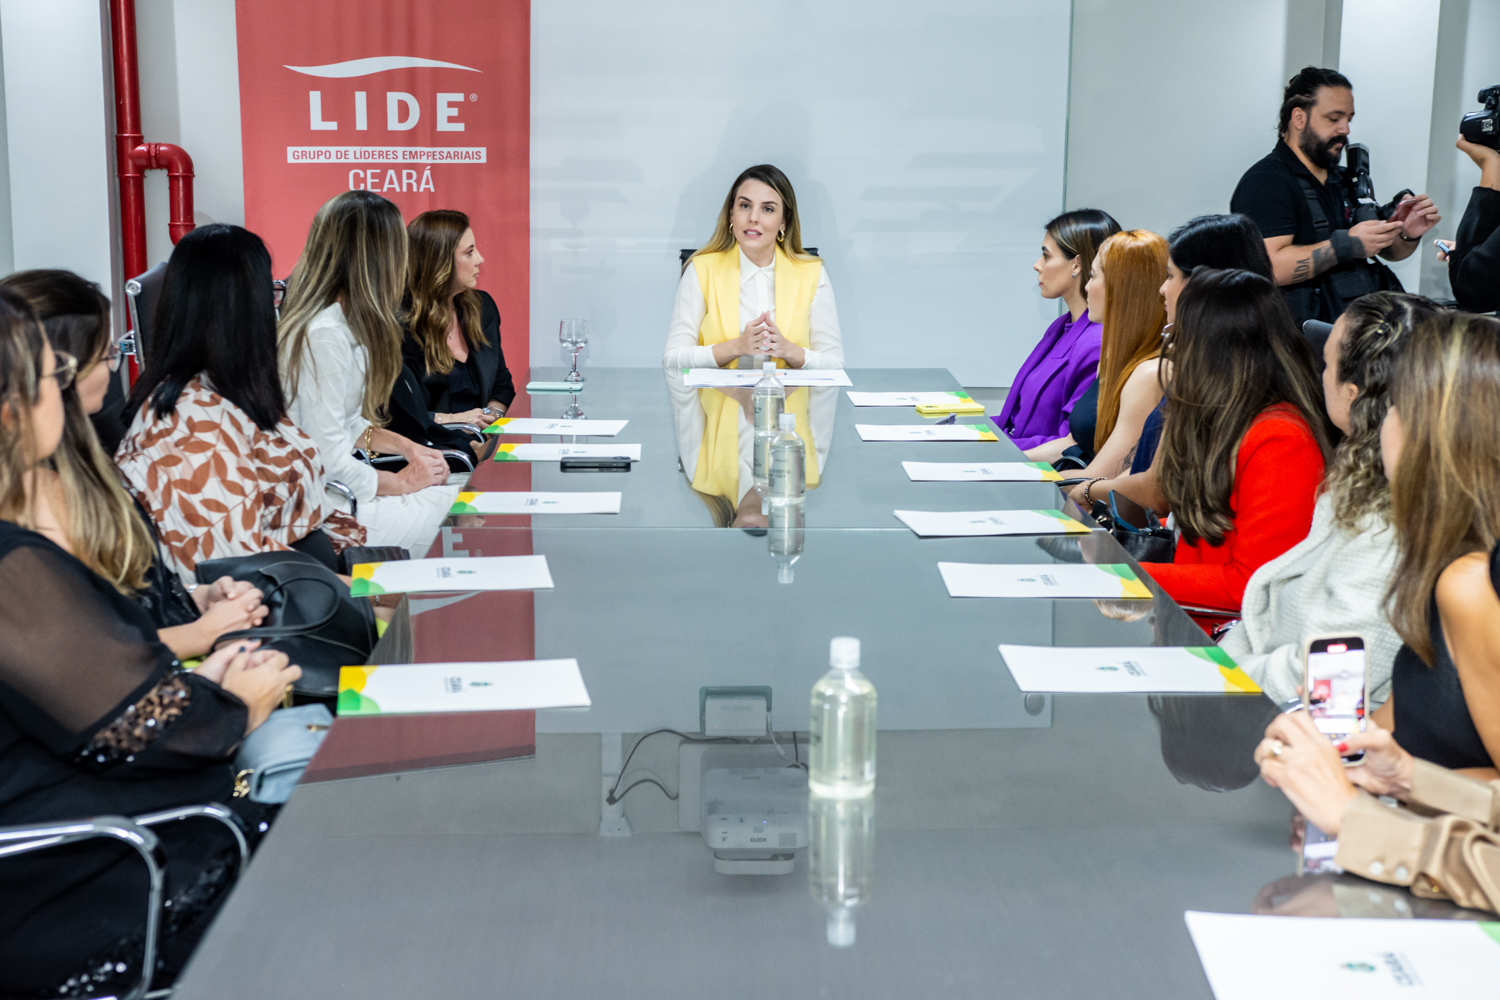 Jade Romero participa de encontro-debate organizado pelo Lide Ceará